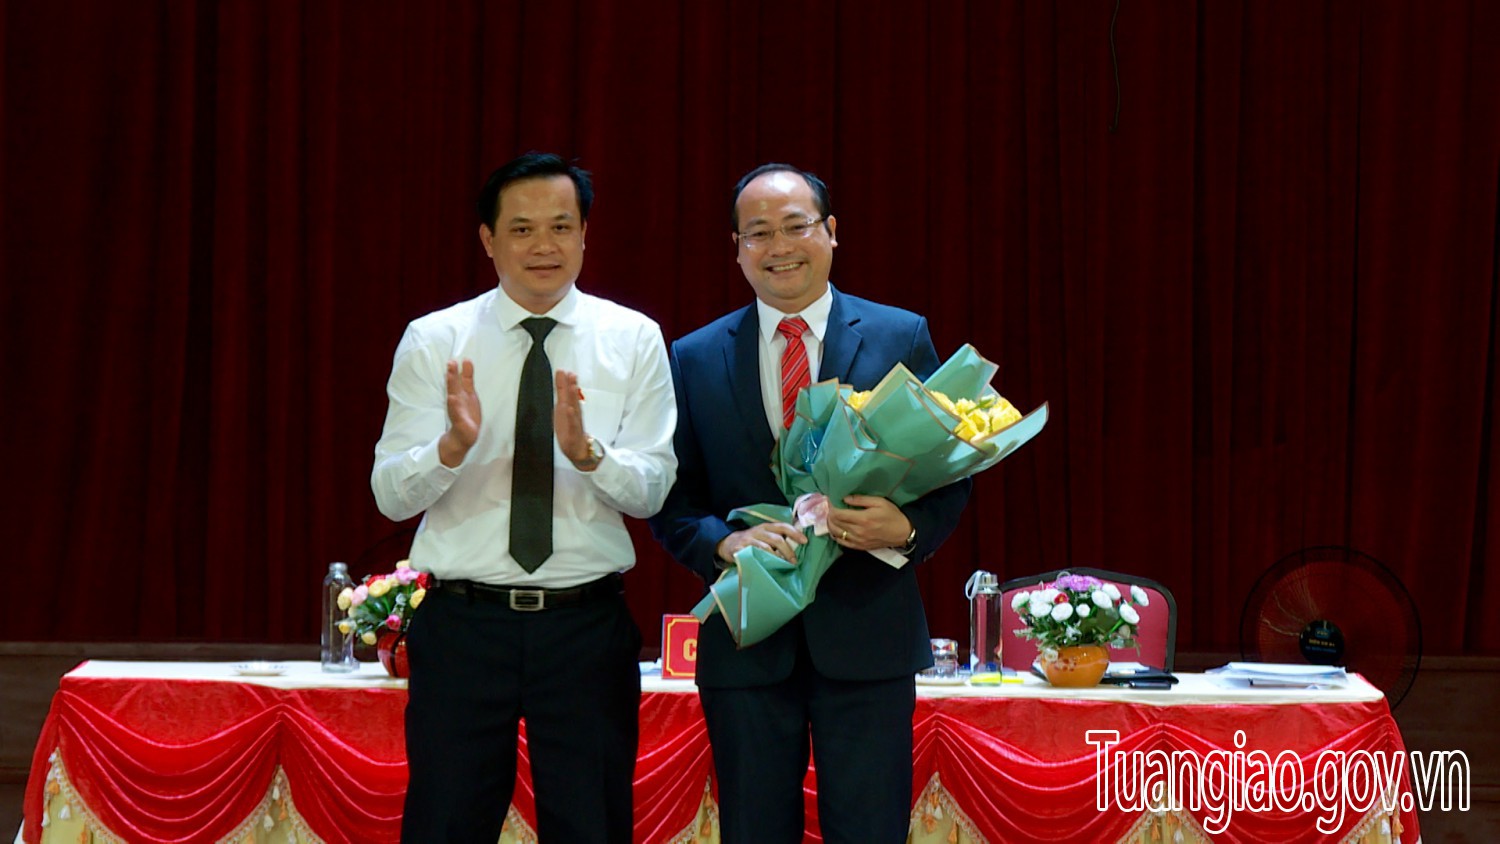 Ông Lê Xuân Cảnh được bầu giữ chức vụ Chủ tịch UBND hình bầu cua tôm cá
, nhiệm kỳ 2021 - 2026